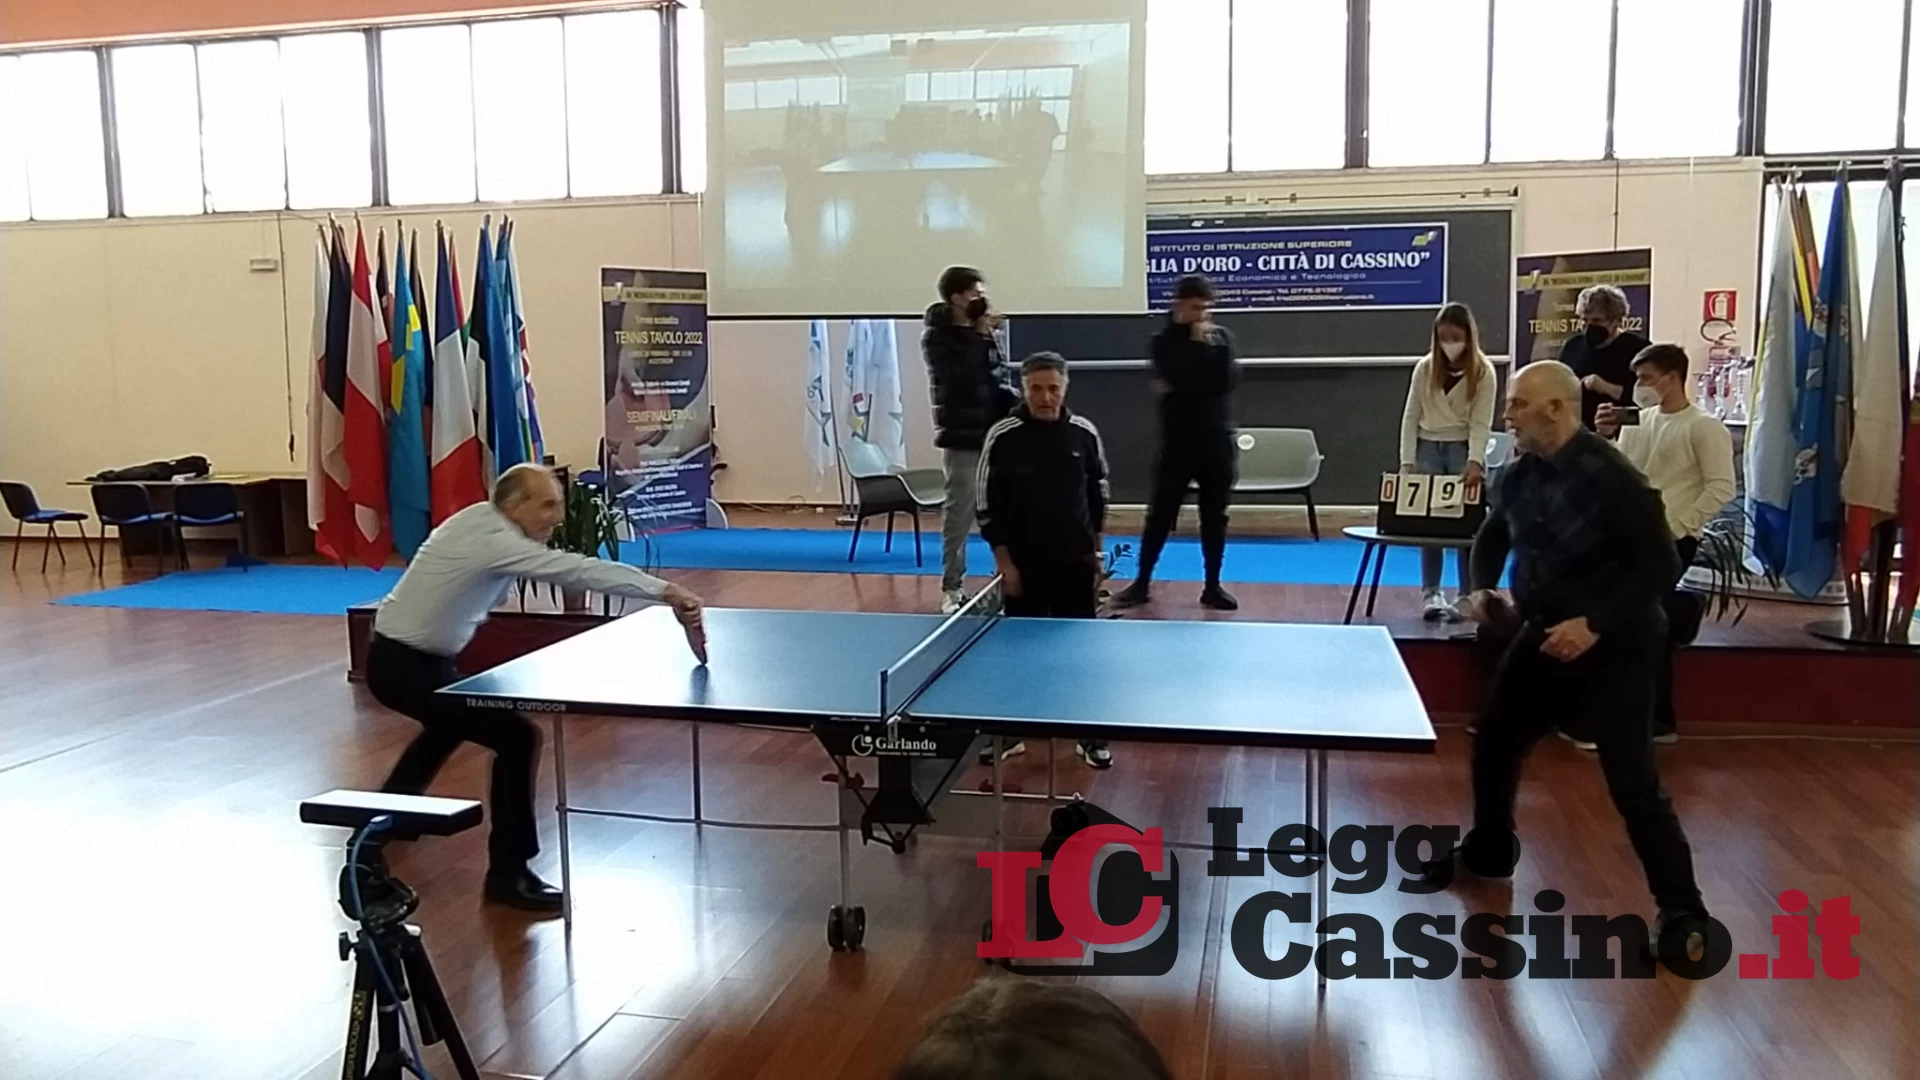 Al "Medaglia d'Oro" di Cassino torneo scolastico di tennis tavolo